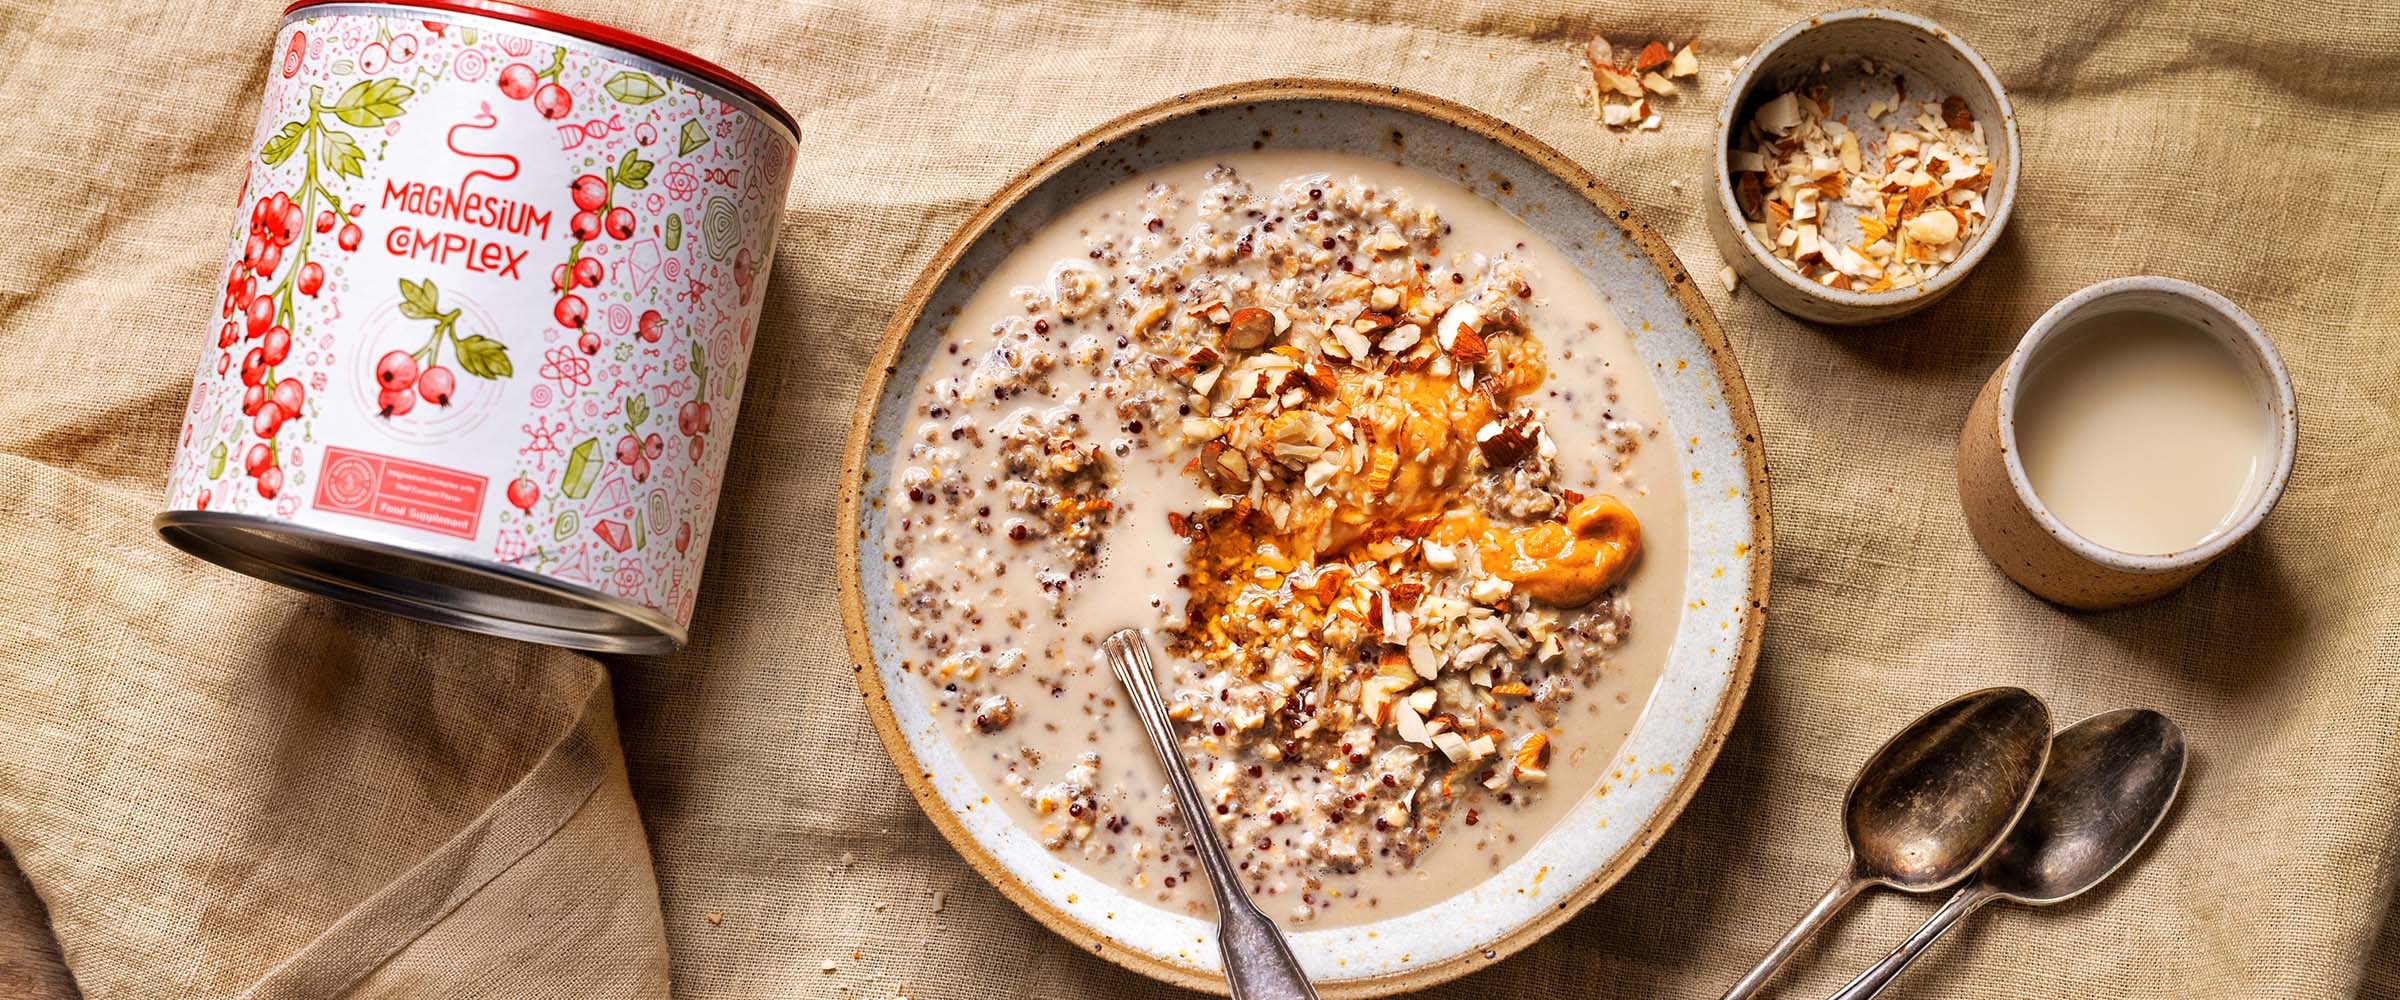 Magnesium Power Breakfast Bowl mit Quinoa und Oats